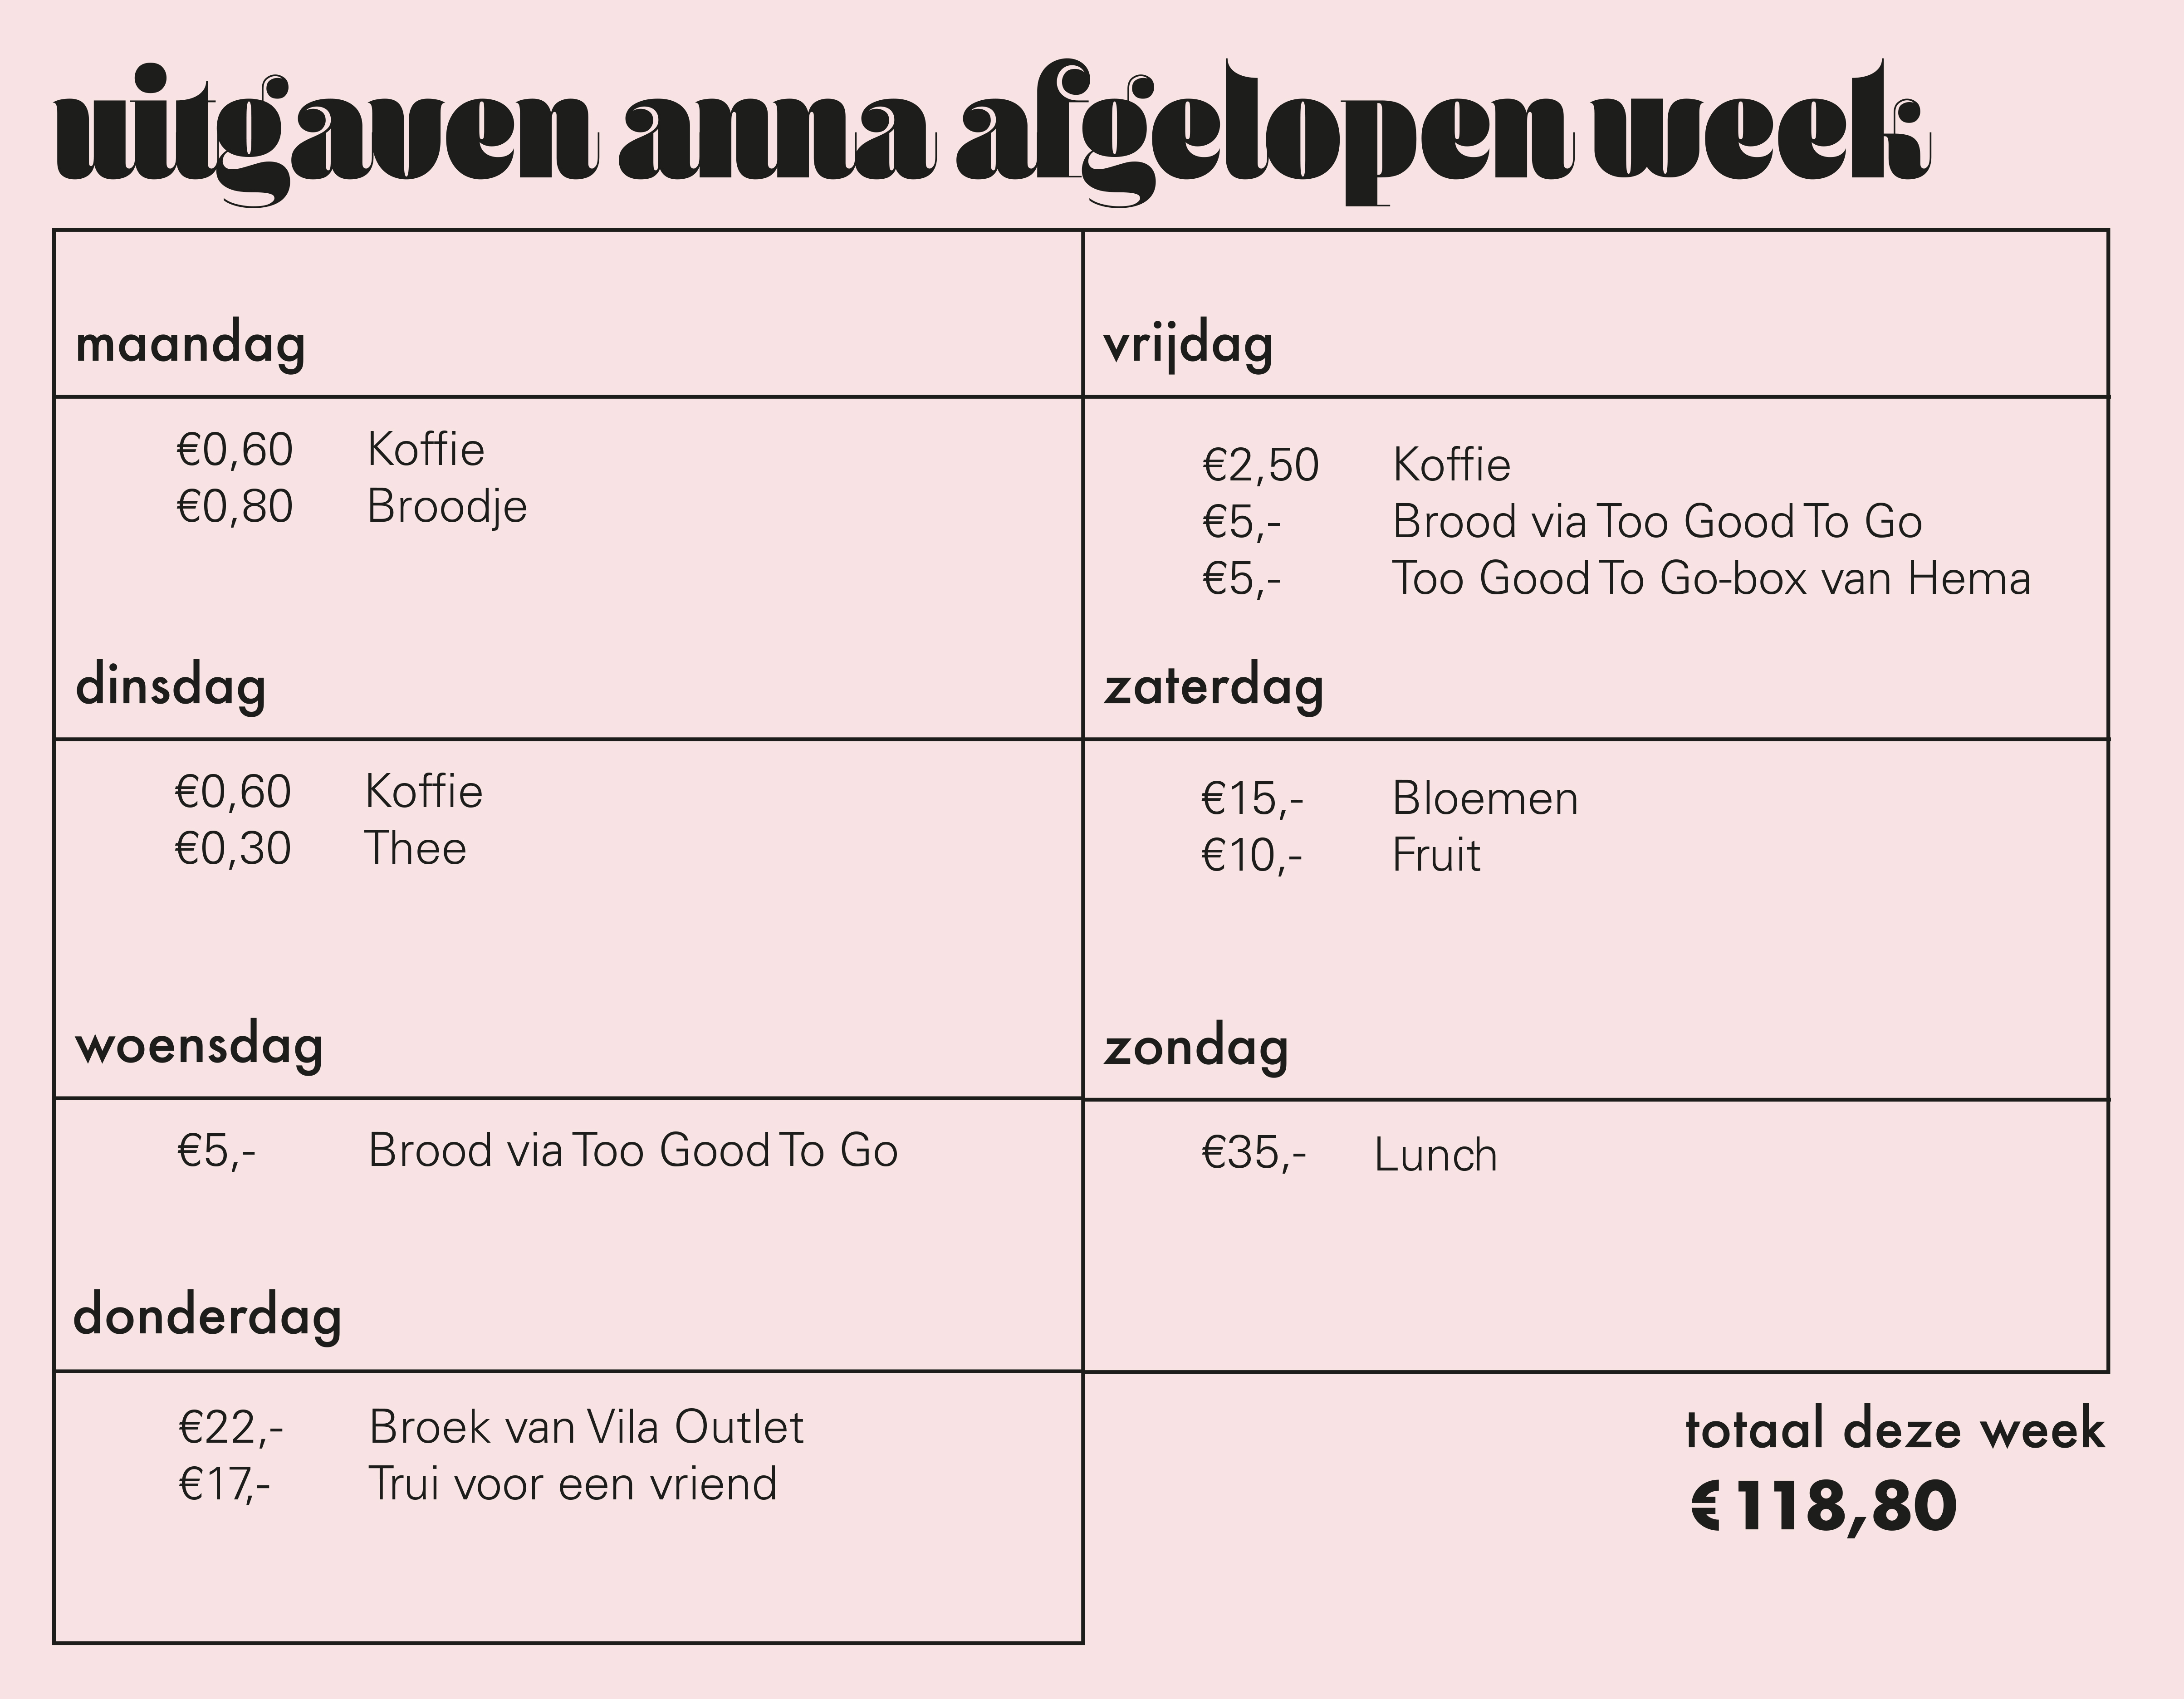 Poenpraat #9: 'Ik geef 100 euro per week uit aan boodschappen'